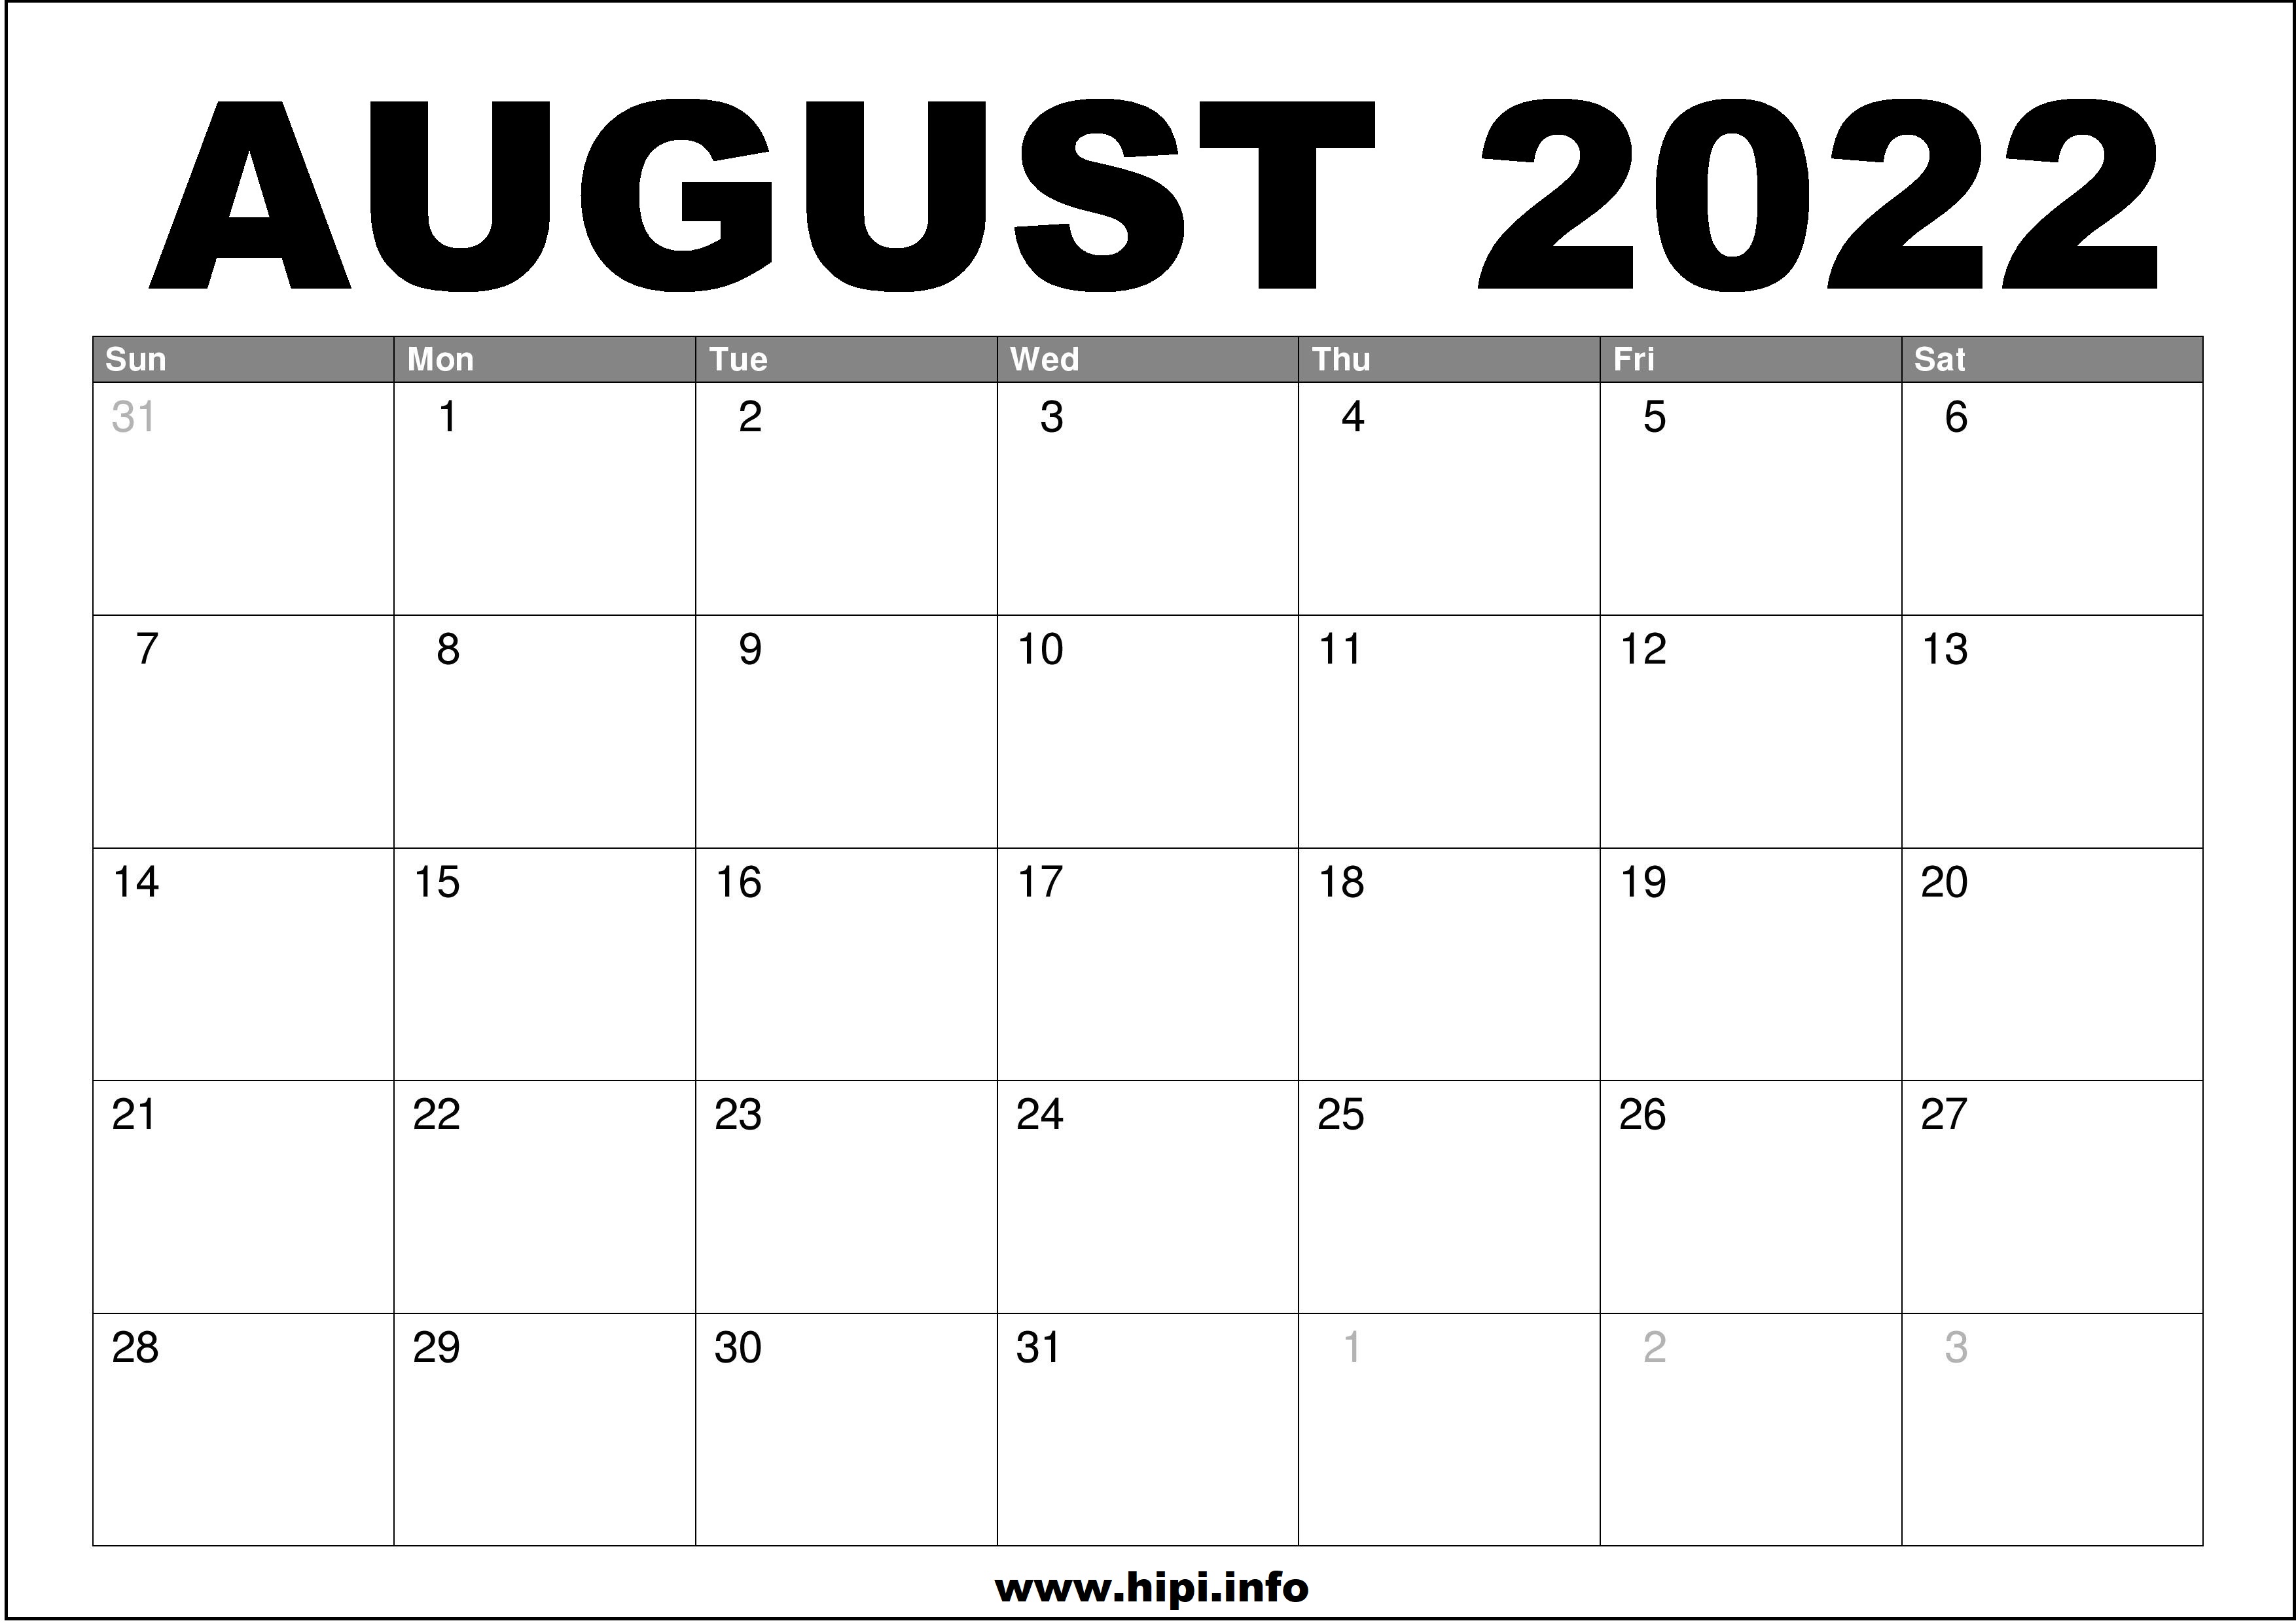 Monthly Calendar 2022 August August 2022 Calendar Printable Free - Hipi.info | Calendars Printable Free